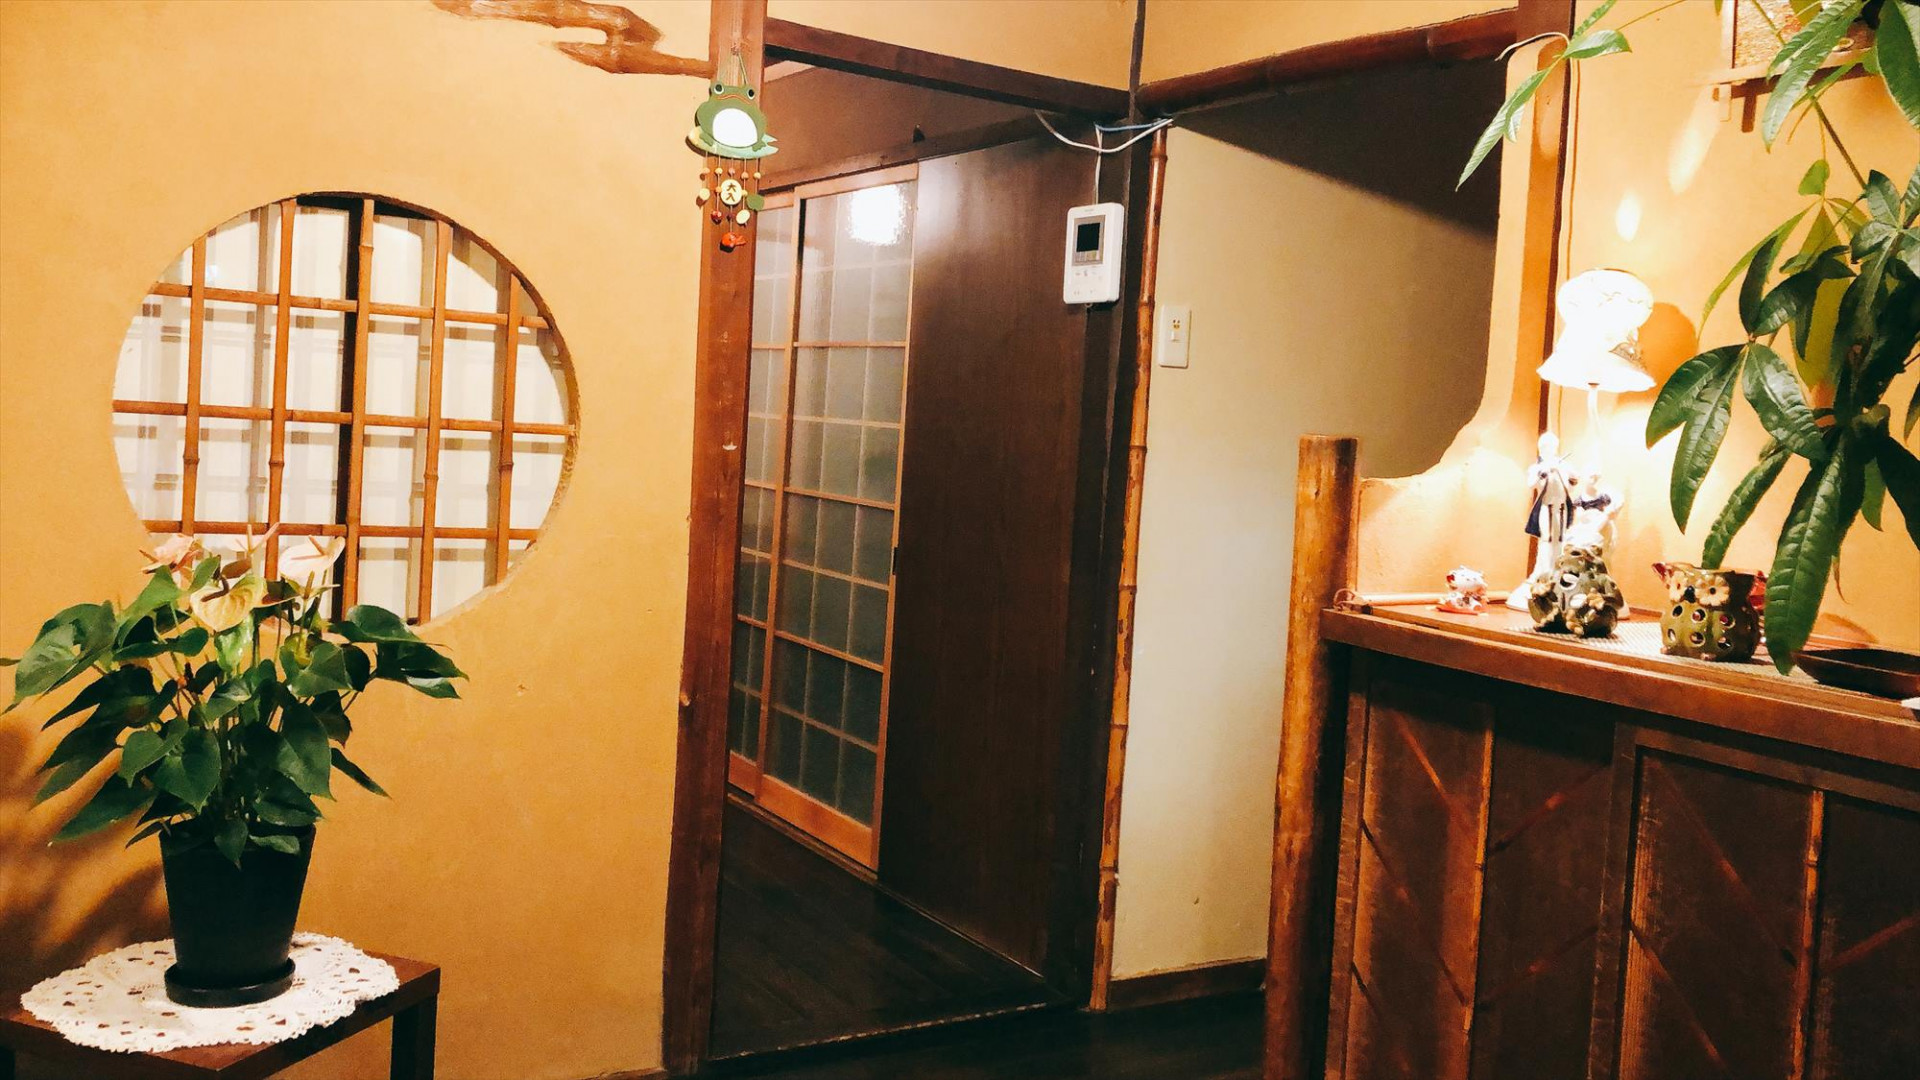 奈良公園の近くにある町屋を利用したお洒落な空間です